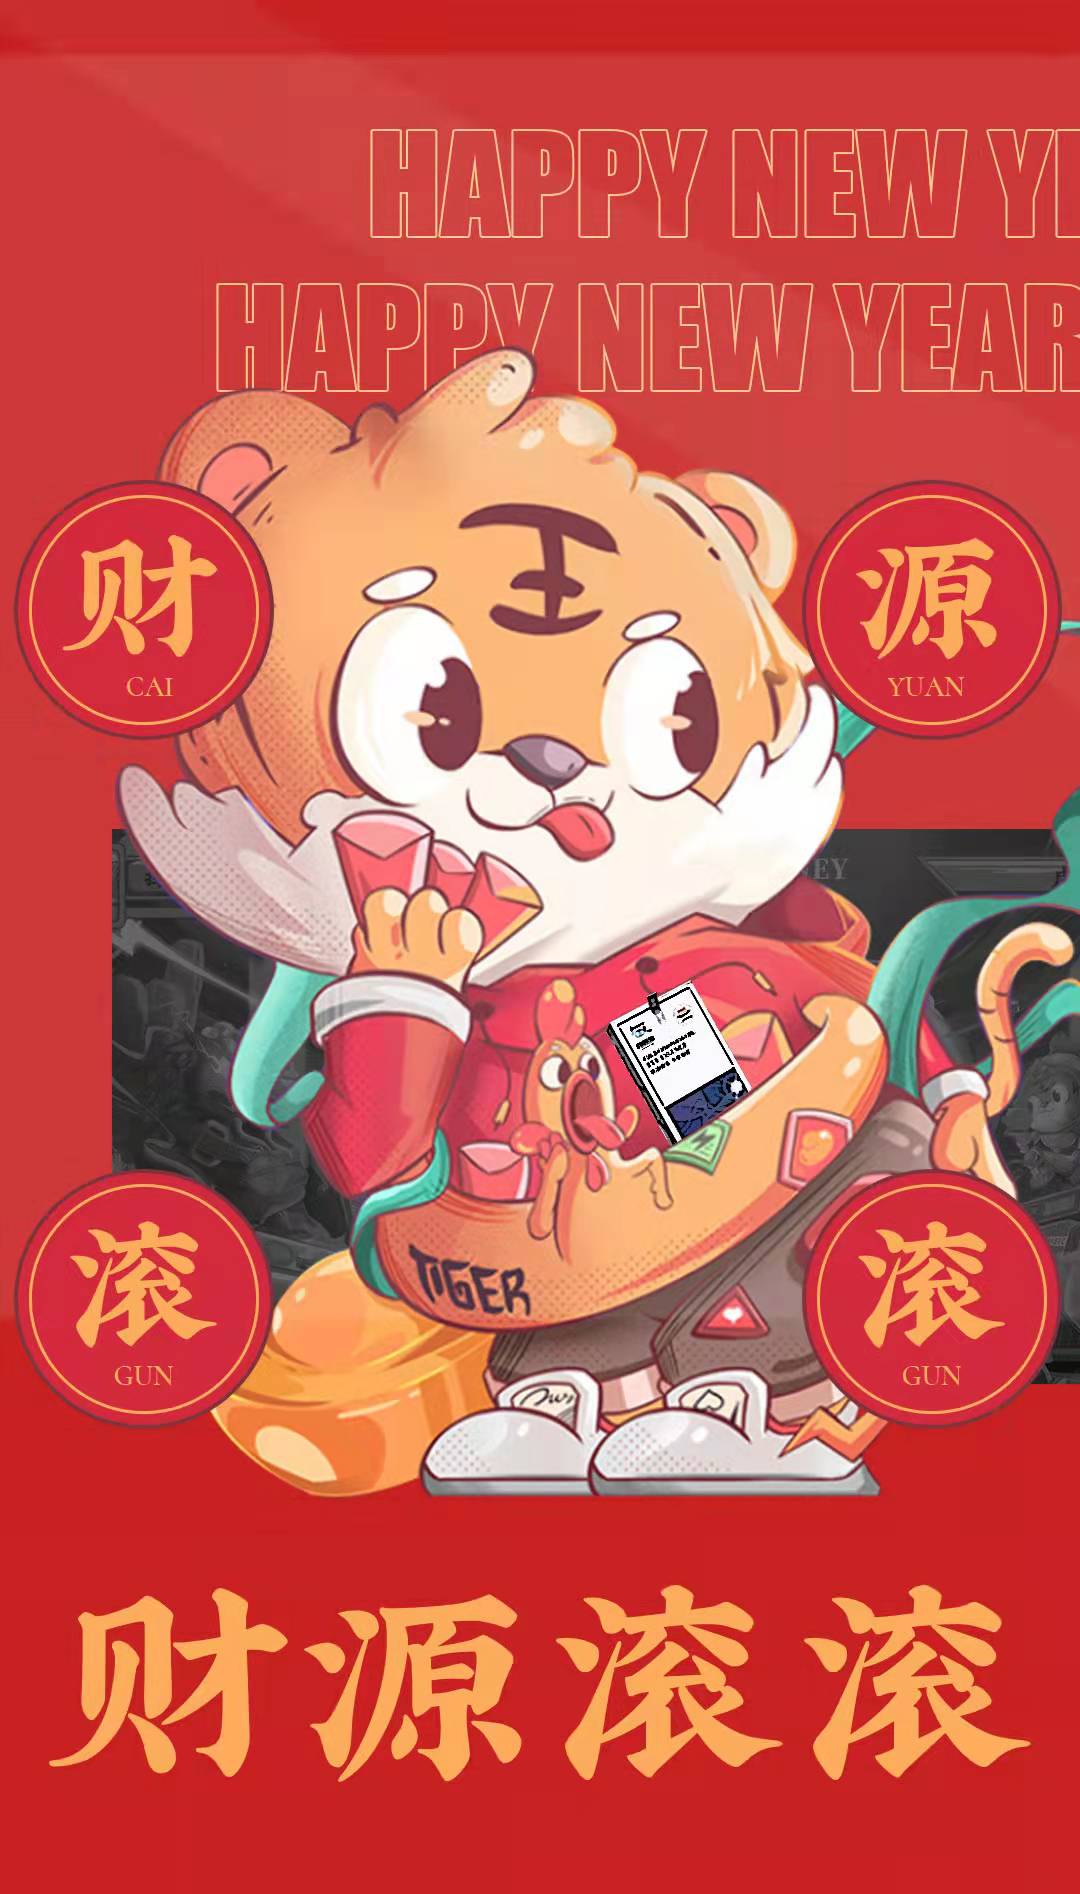 宁夏红日电线电缆有限公司预祝大家虎年大吉！新年快乐！